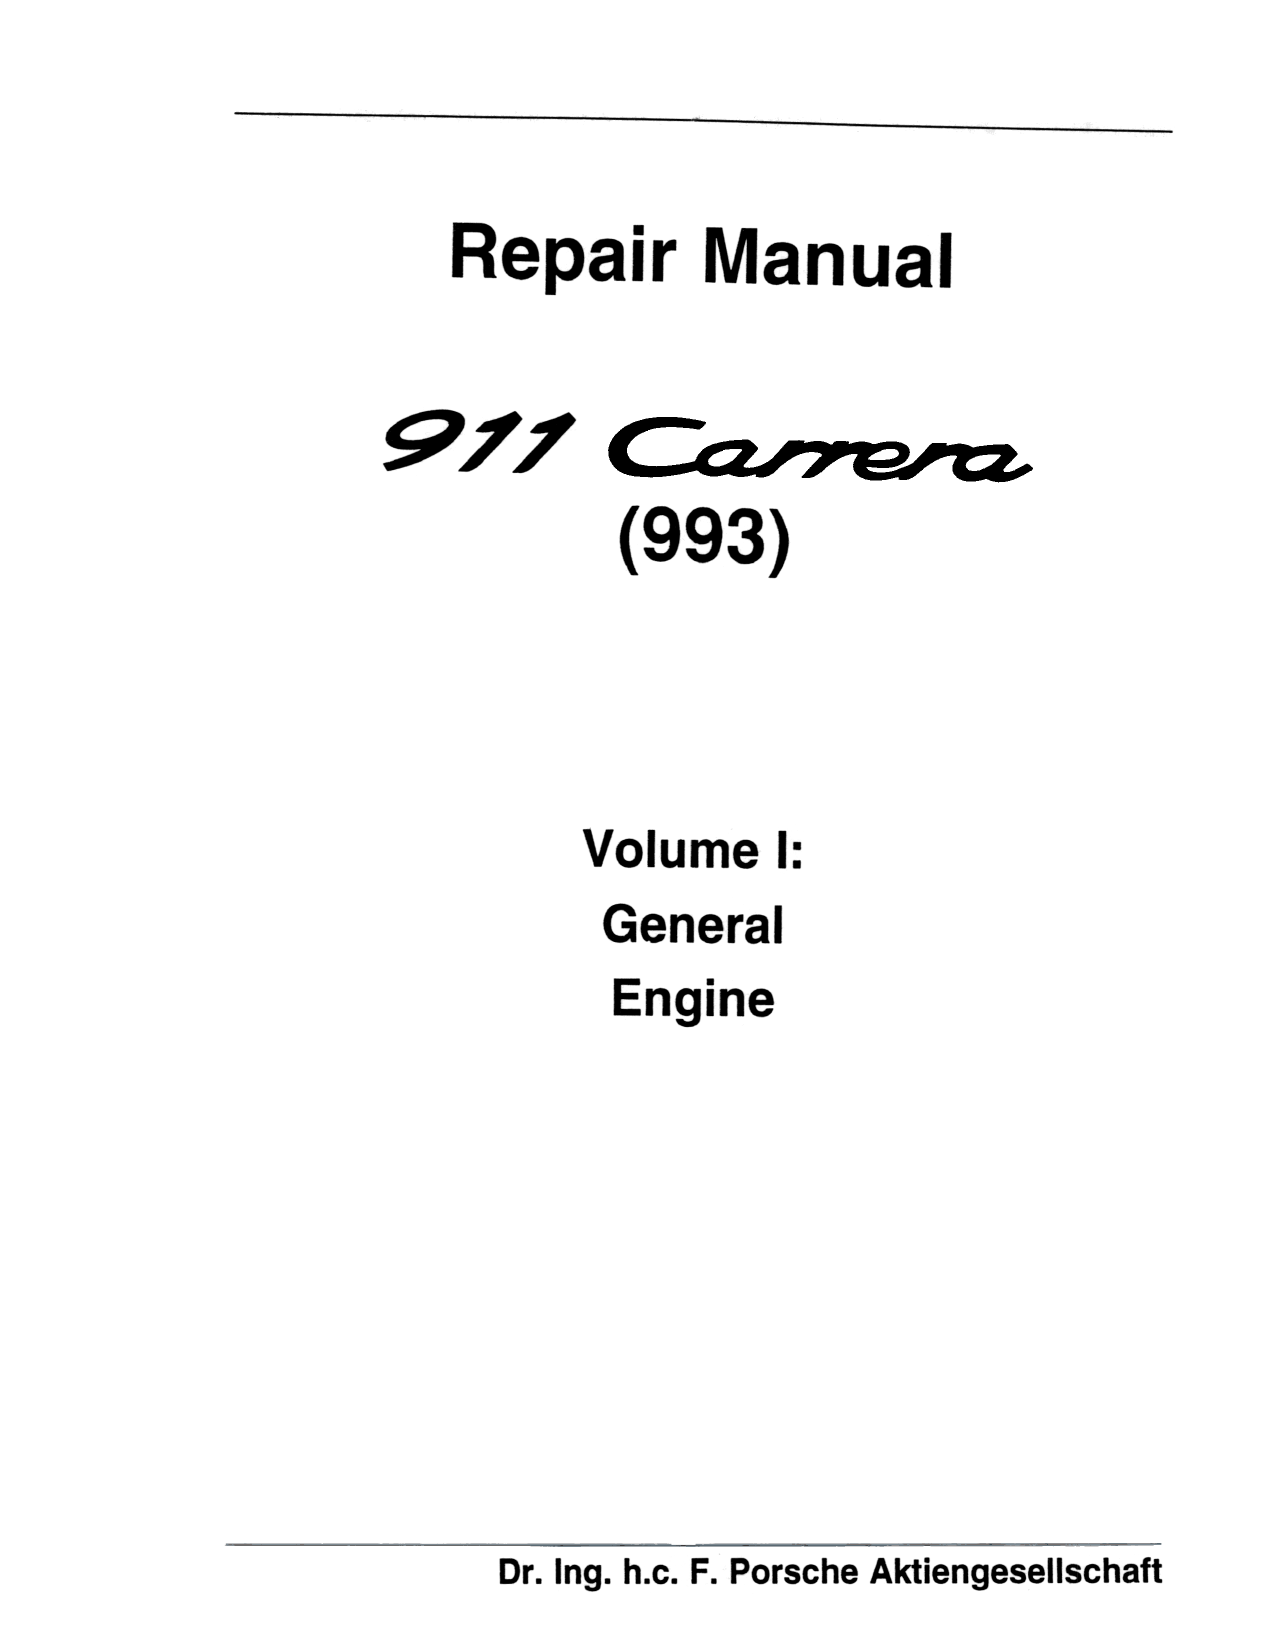 Porsche 911 Carrera 993 repair manual Preview image 1